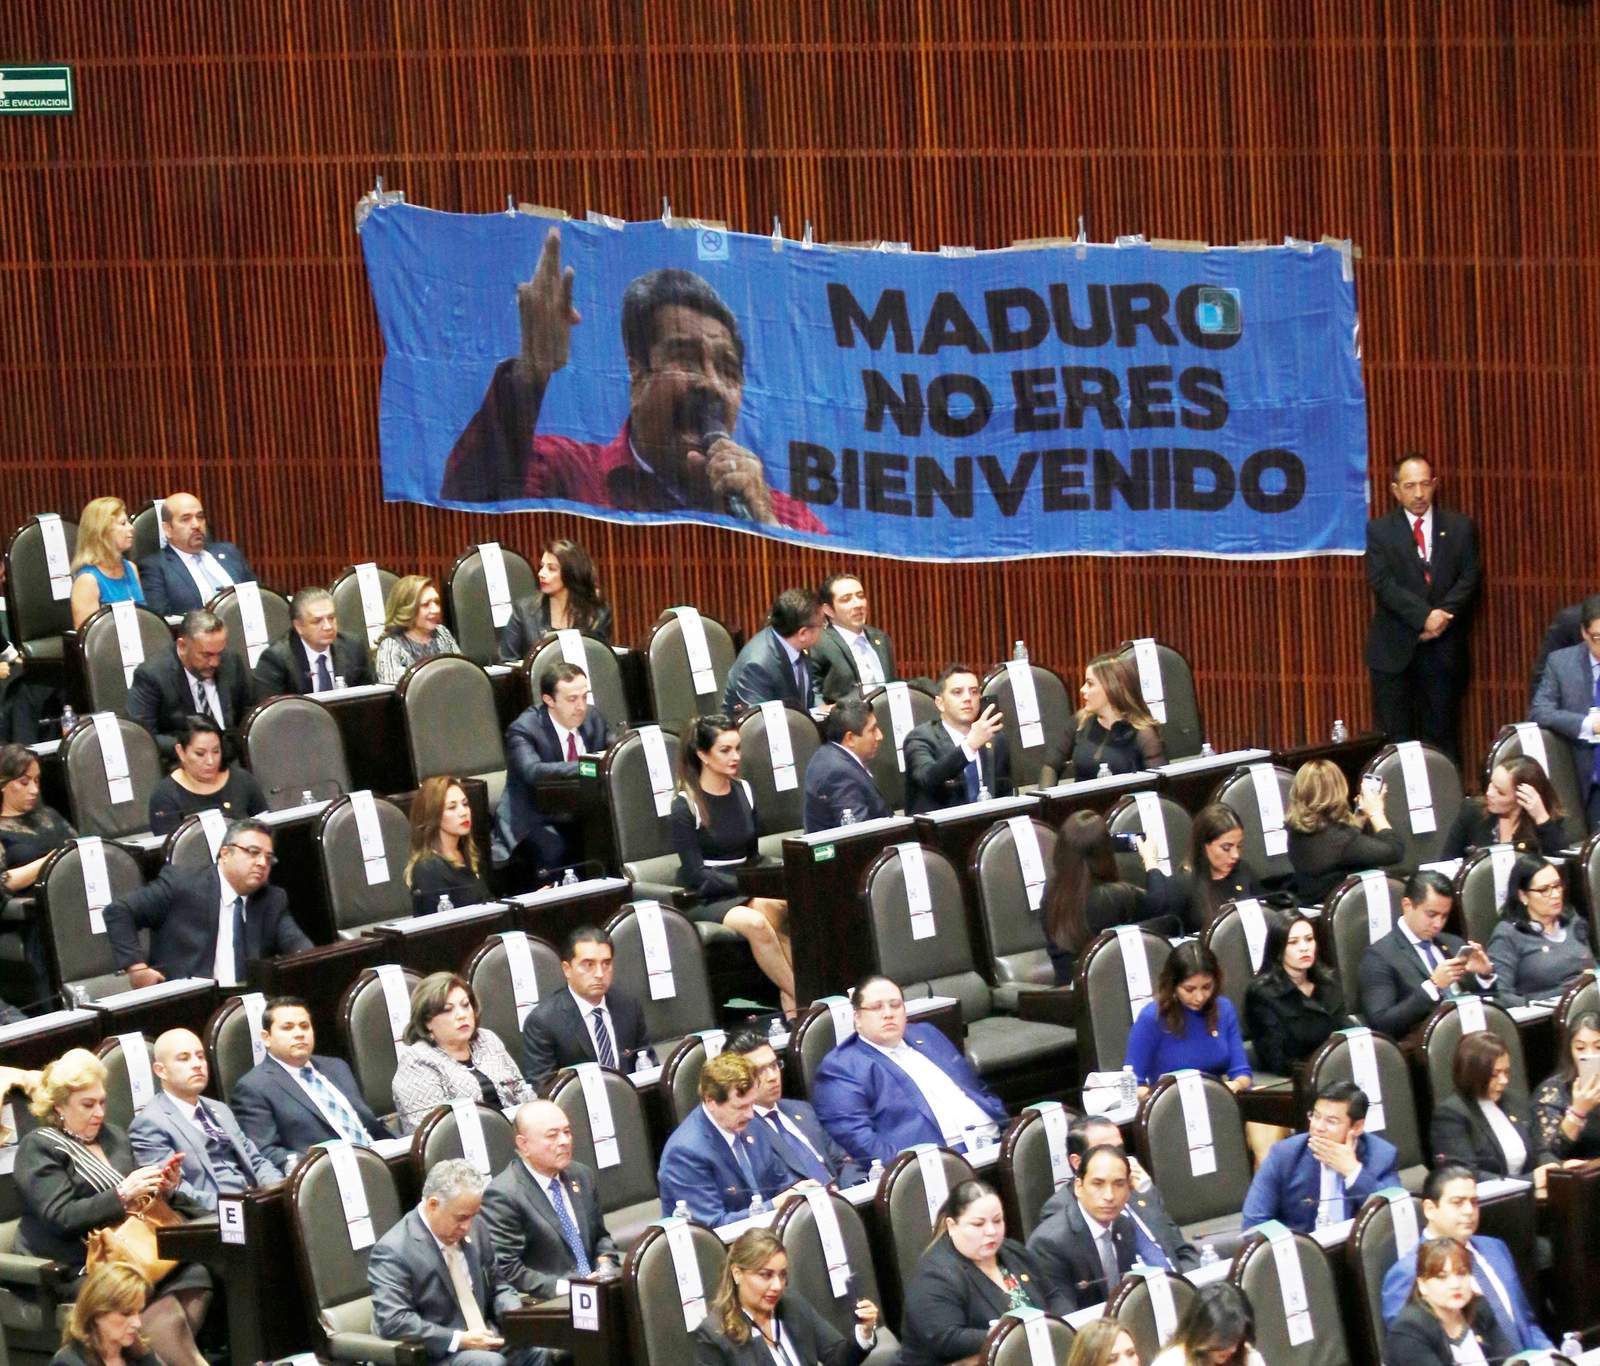 Un honor que la derecha me ataque: Maduro tras visita a México. Noticias en tiempo real